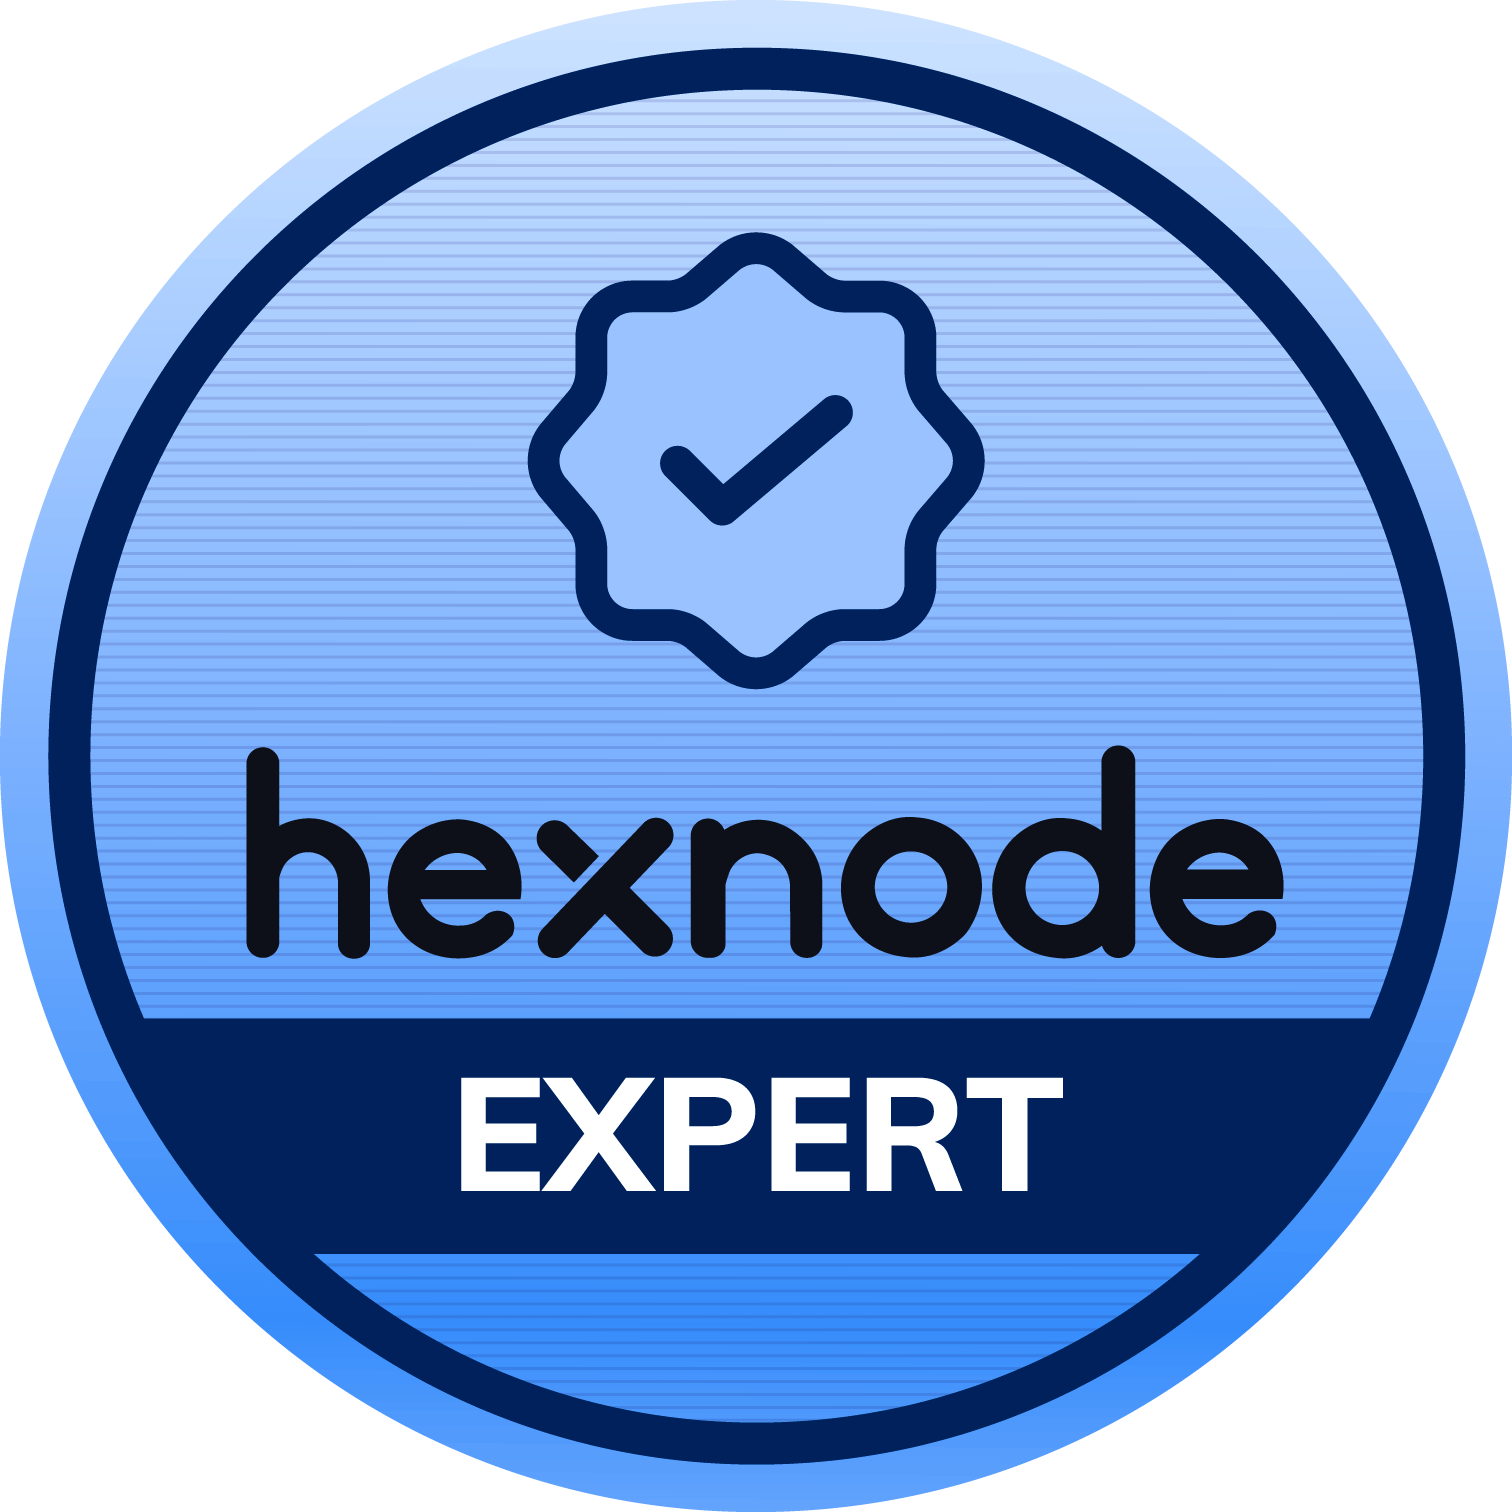 Hexnode Expert image